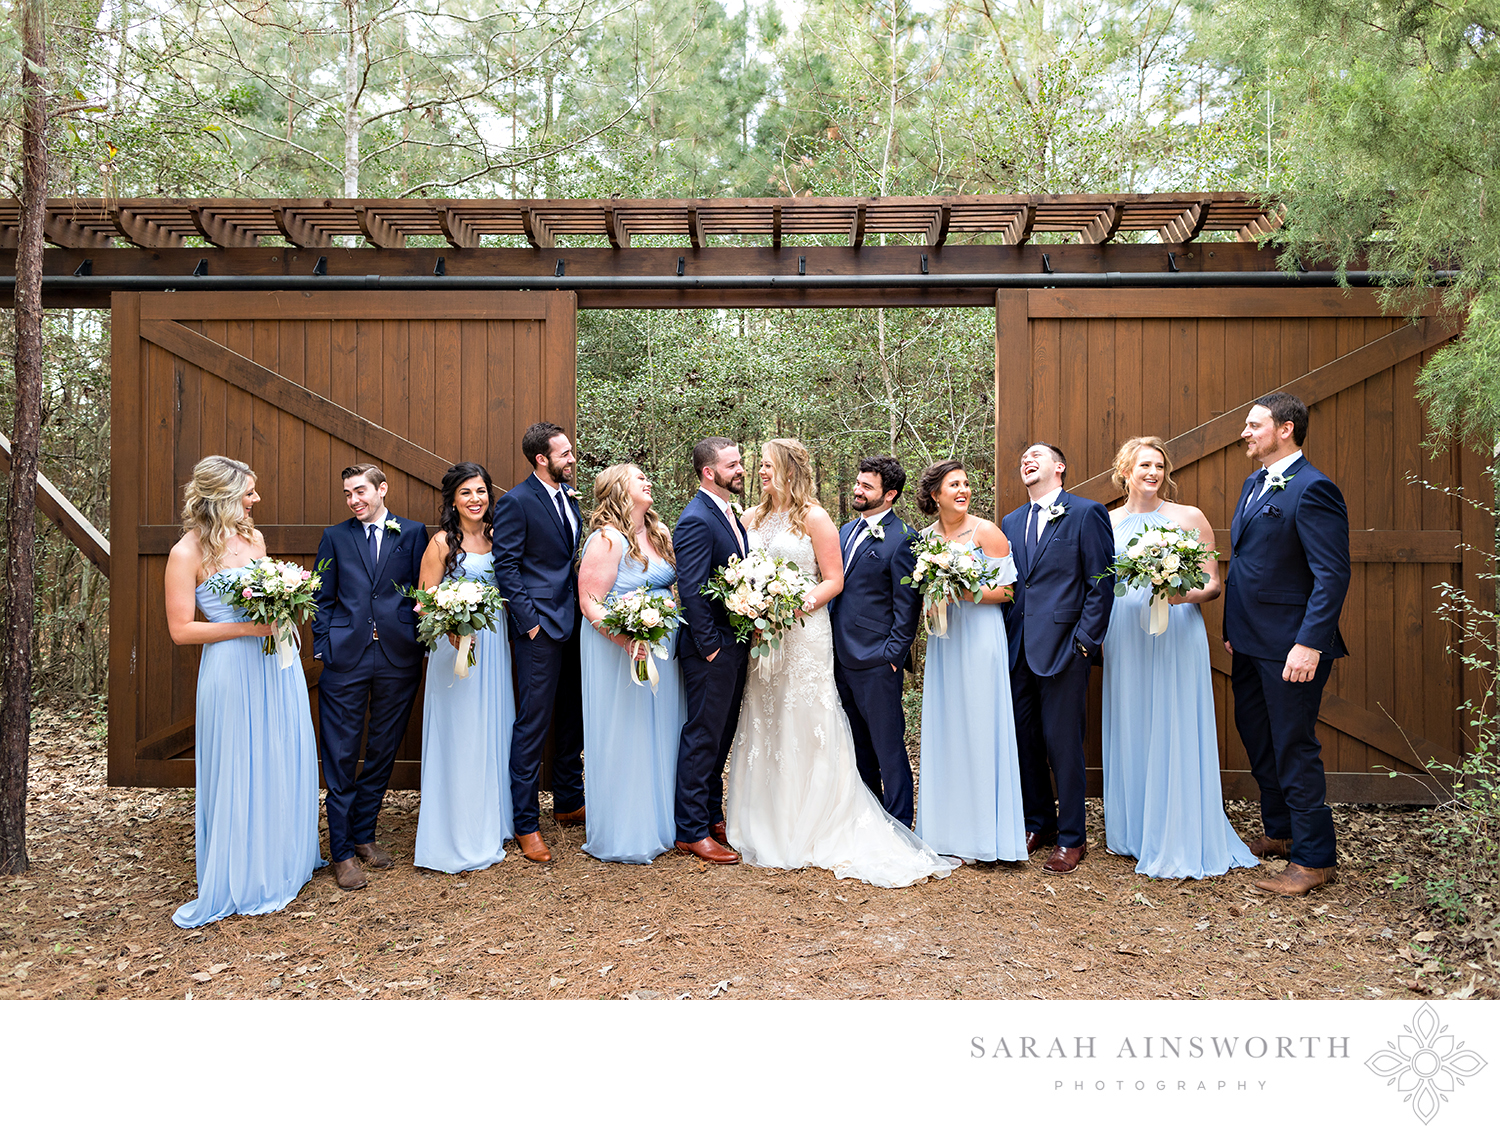 magnolia-bells-wedding-venue-magnolia-wedding-venues-barn-wedding-venues-houston-magnolia-chapels_01.jpg